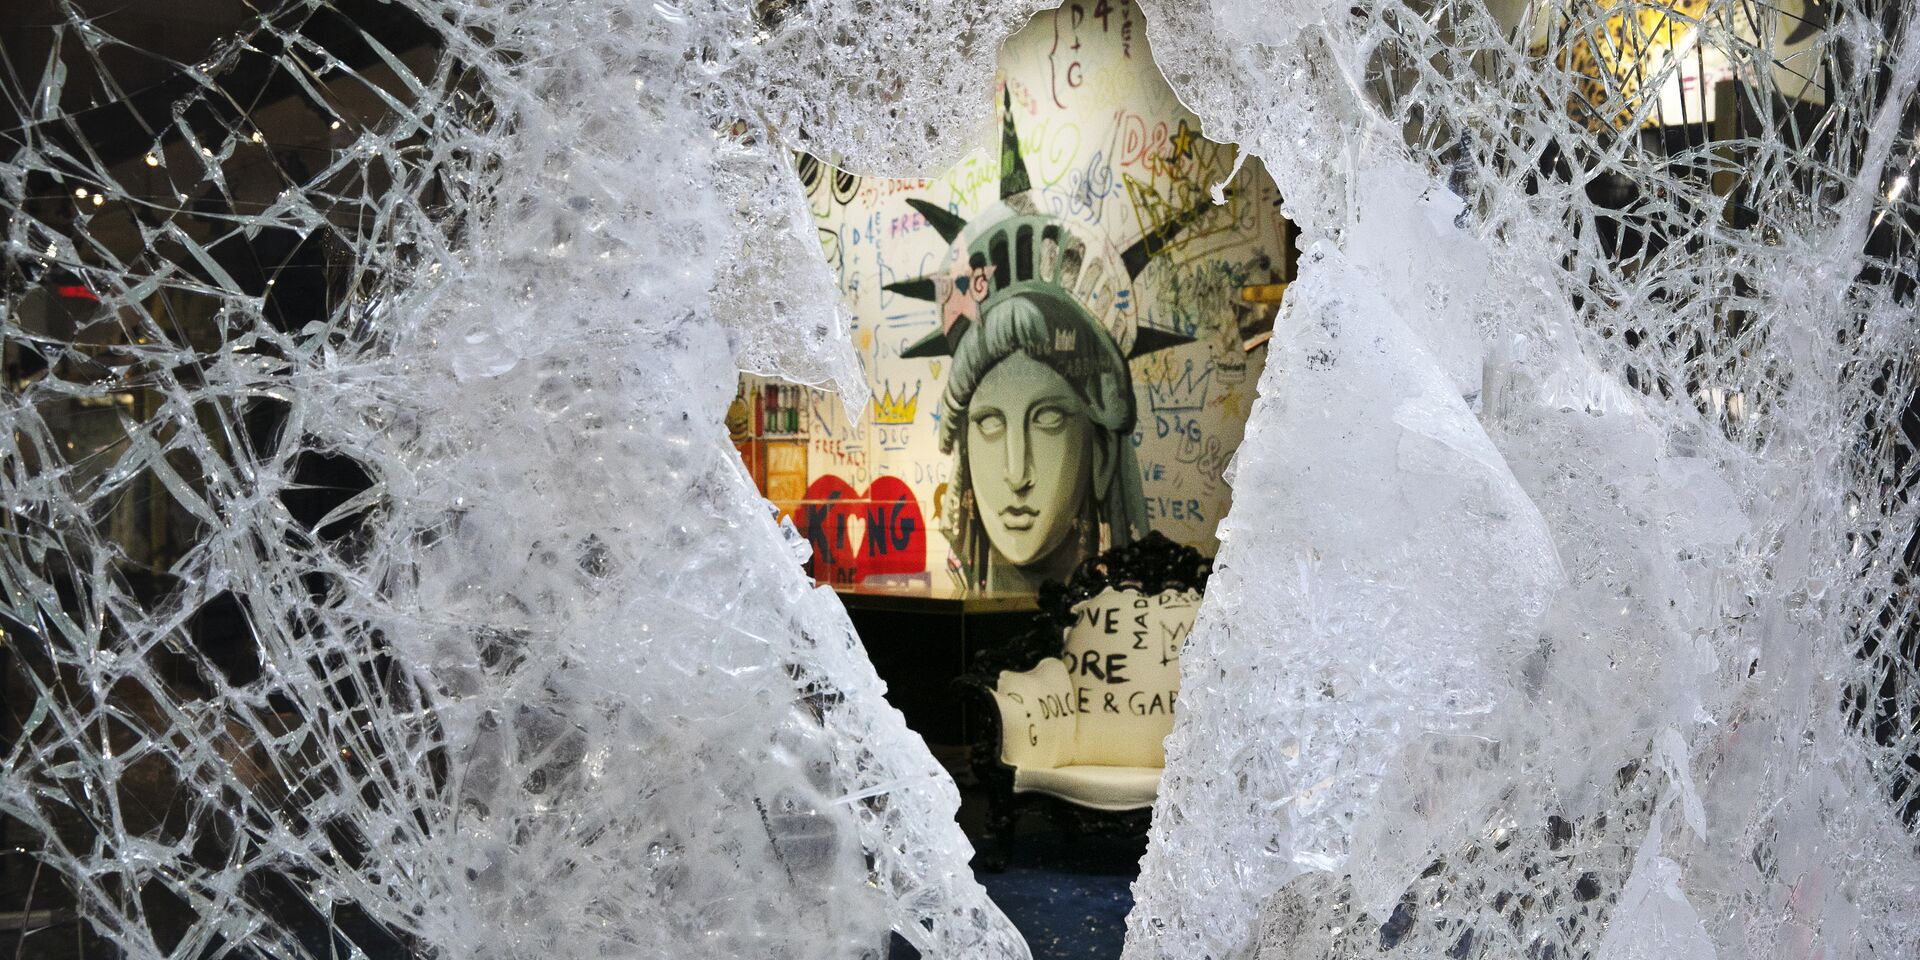 Граффити, изображающее лицо Статуи свободы, через разбитую витрину магазина в Нью-Йорке, США - ИноСМИ, 1920, 18.04.2021